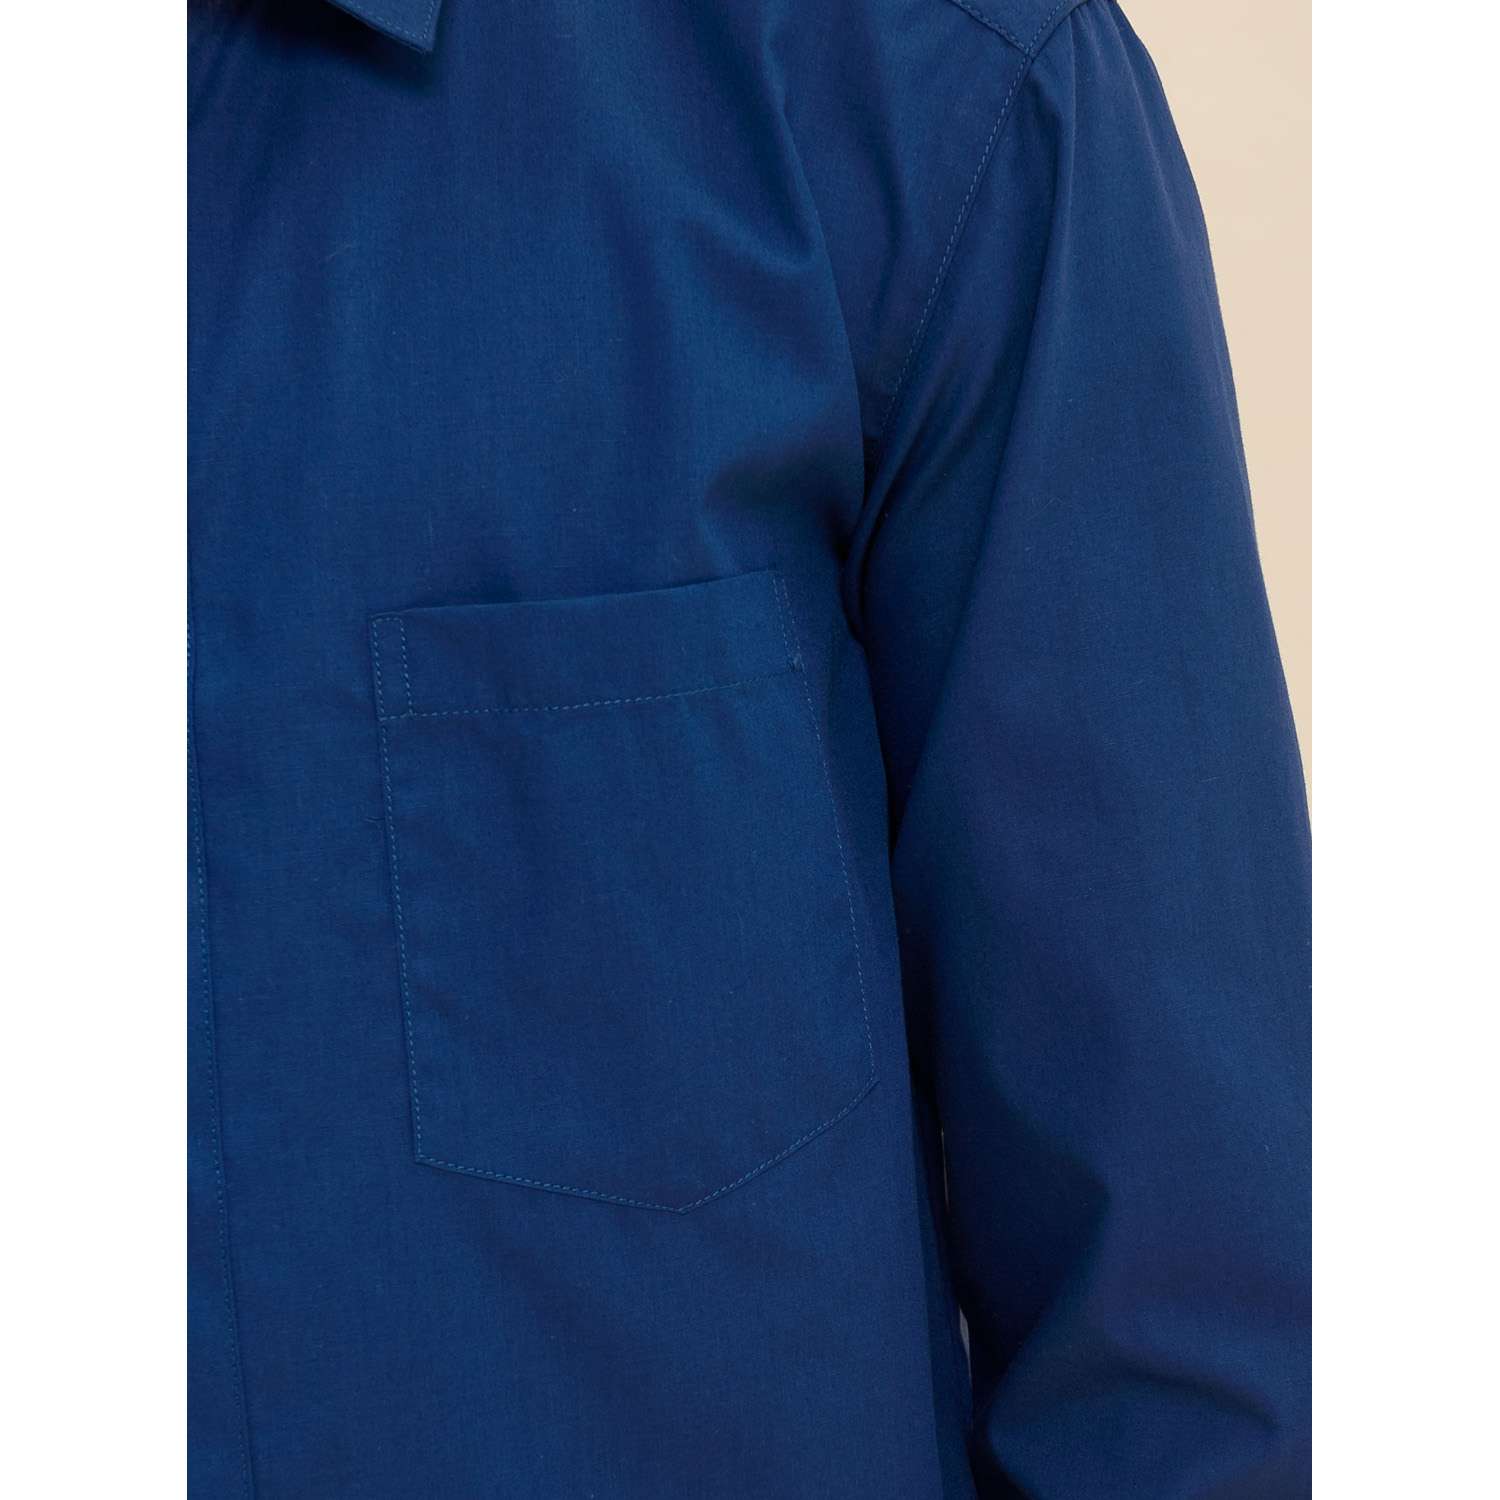 Рубашка PELICAN BWCJ8046/Синий(41) - фото 5